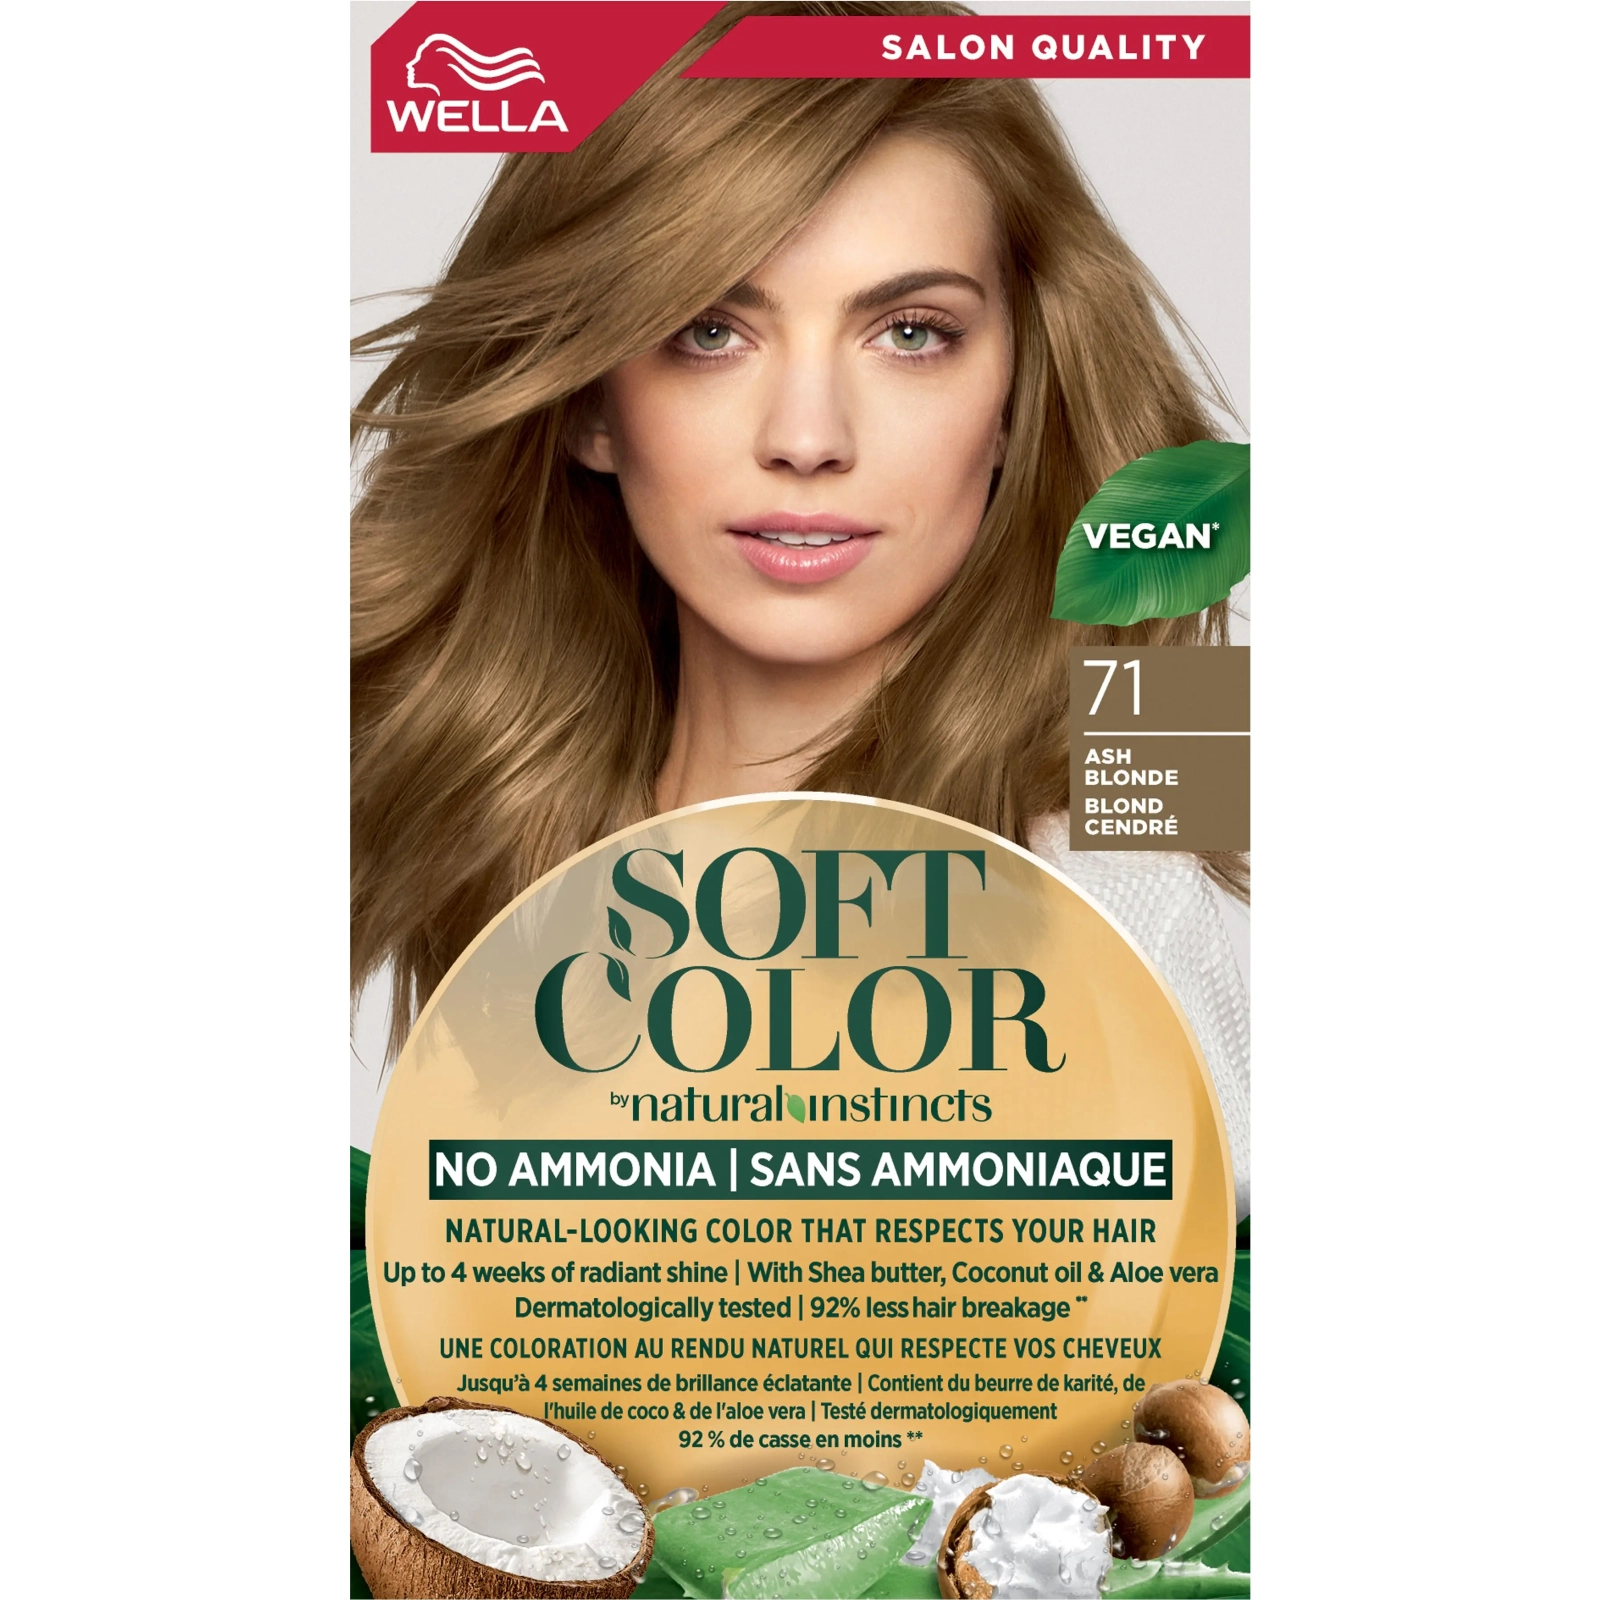 Краска для волос Wella Soft Color Безаммиачная 67 - Шоколад (3614228865791) изображение 2